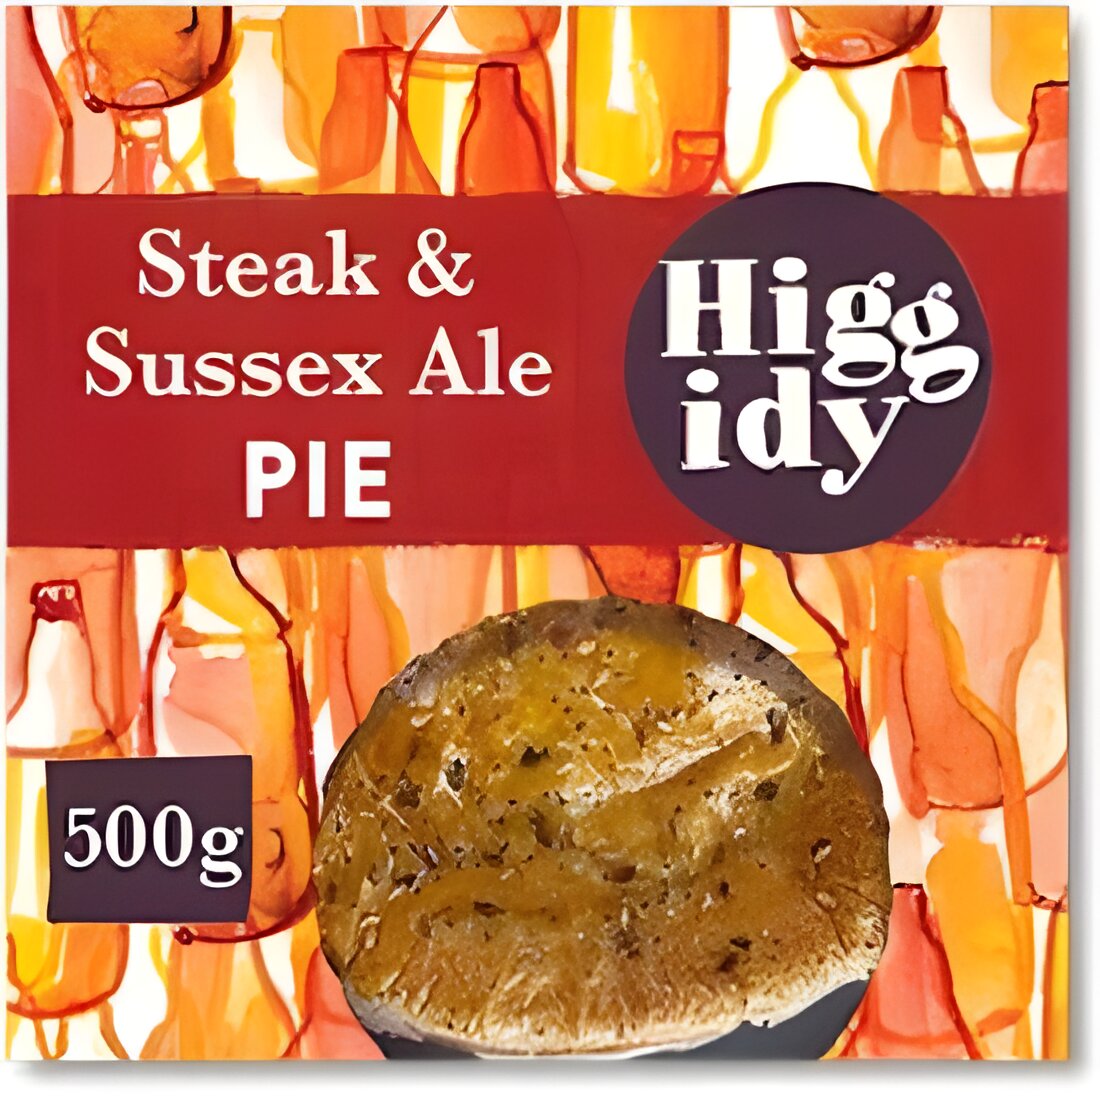 Free Higgidy Steak & Sussex Ale Pie